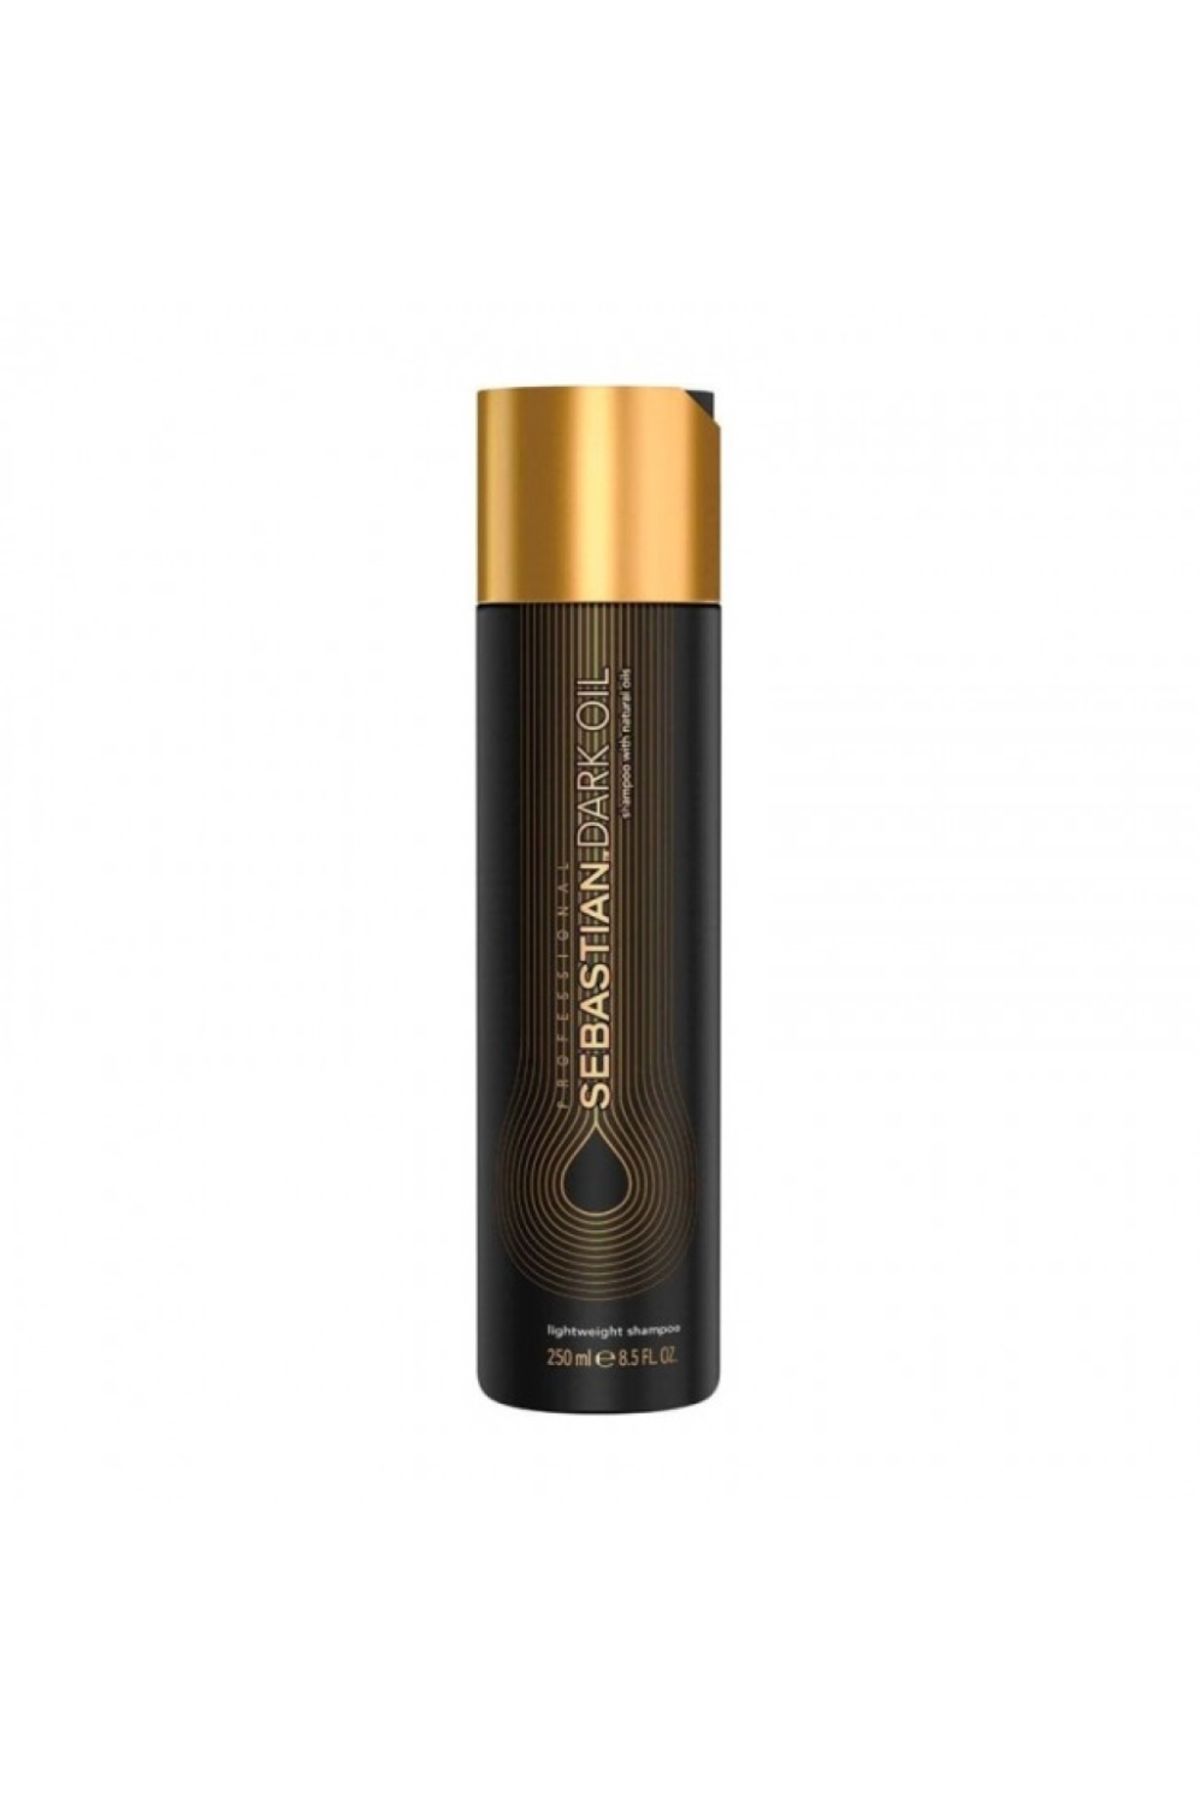 Sebastian – Dark Oil Lightweight 3 Kata Kadar Daha Pürüzsüz Saçlar İçin Şampuan 250ml-